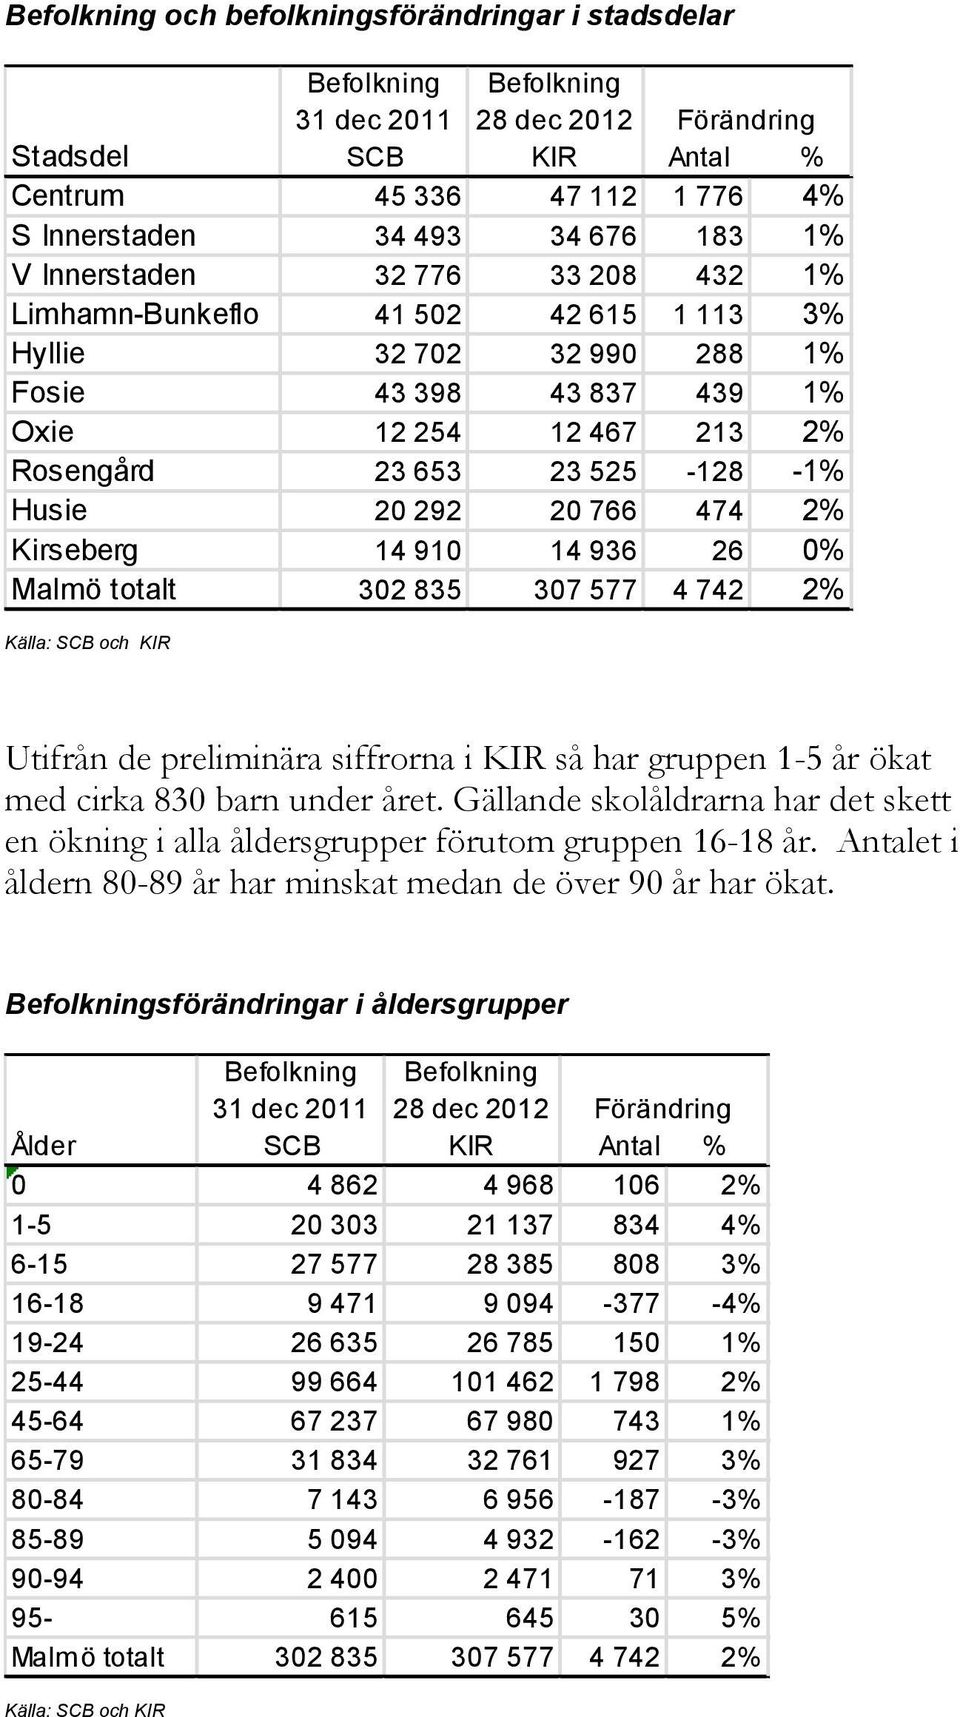 525-128 -1% Husie 20 292 20 766 474 2% Kirseberg 14 910 14 936 26 0% Malmö totalt 302 835 307 577 4 742 2% Utifrån de preliminära siffrorna i KIR så har gruppen 1-5 år ökat med cirka 830 barn under